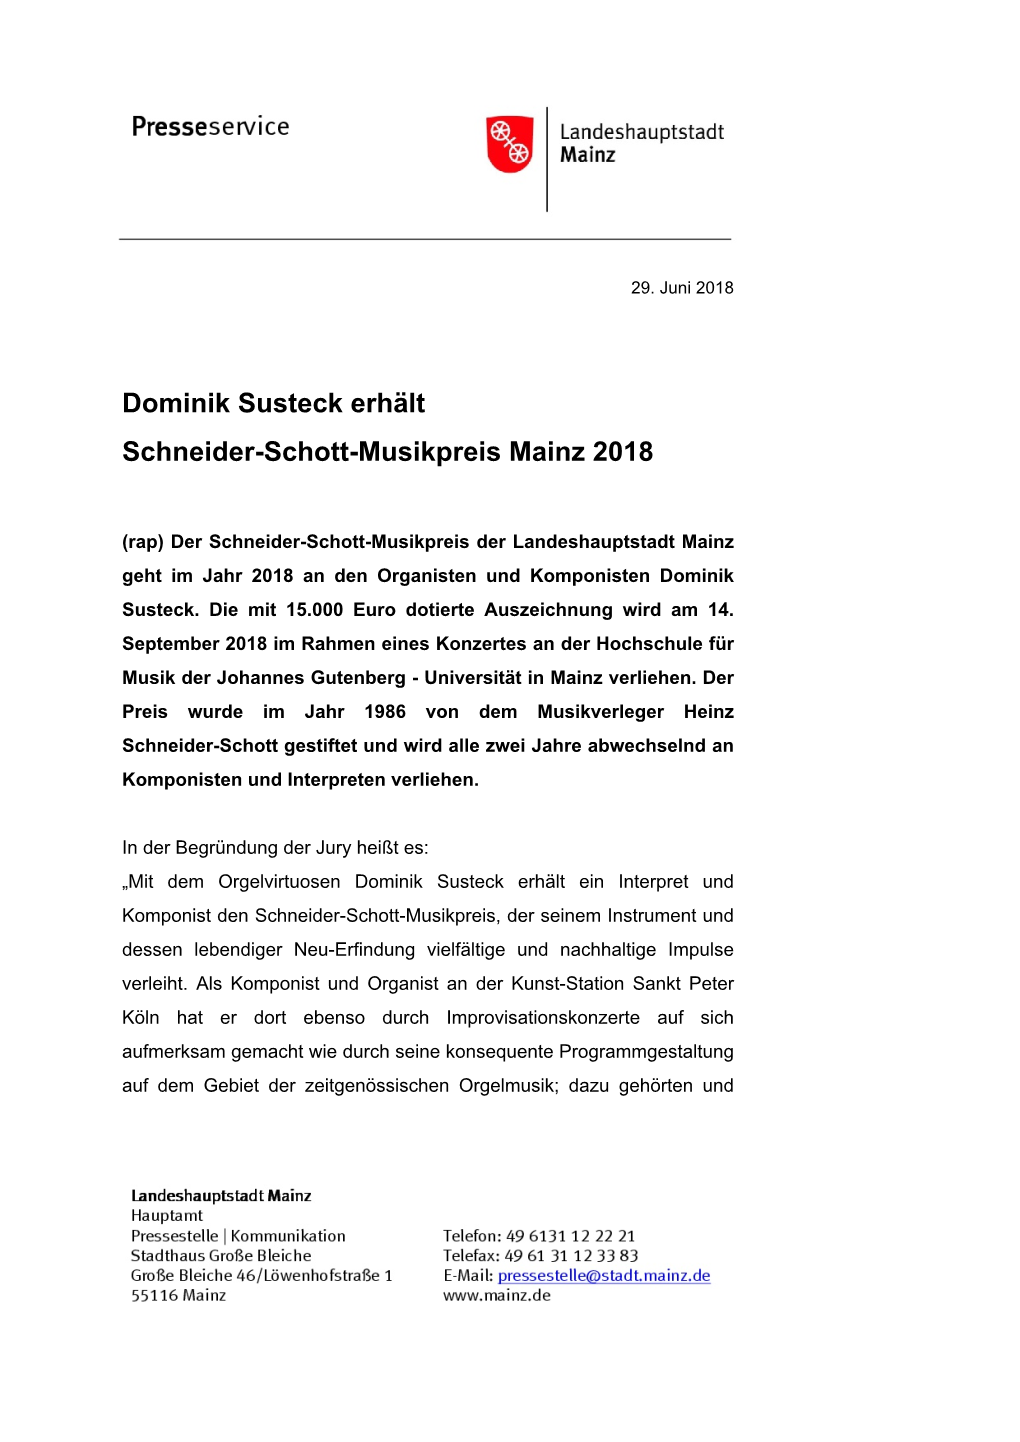 Dominik Susteck Erhält Schneider-Schott-Musikpreis Mainz 2018